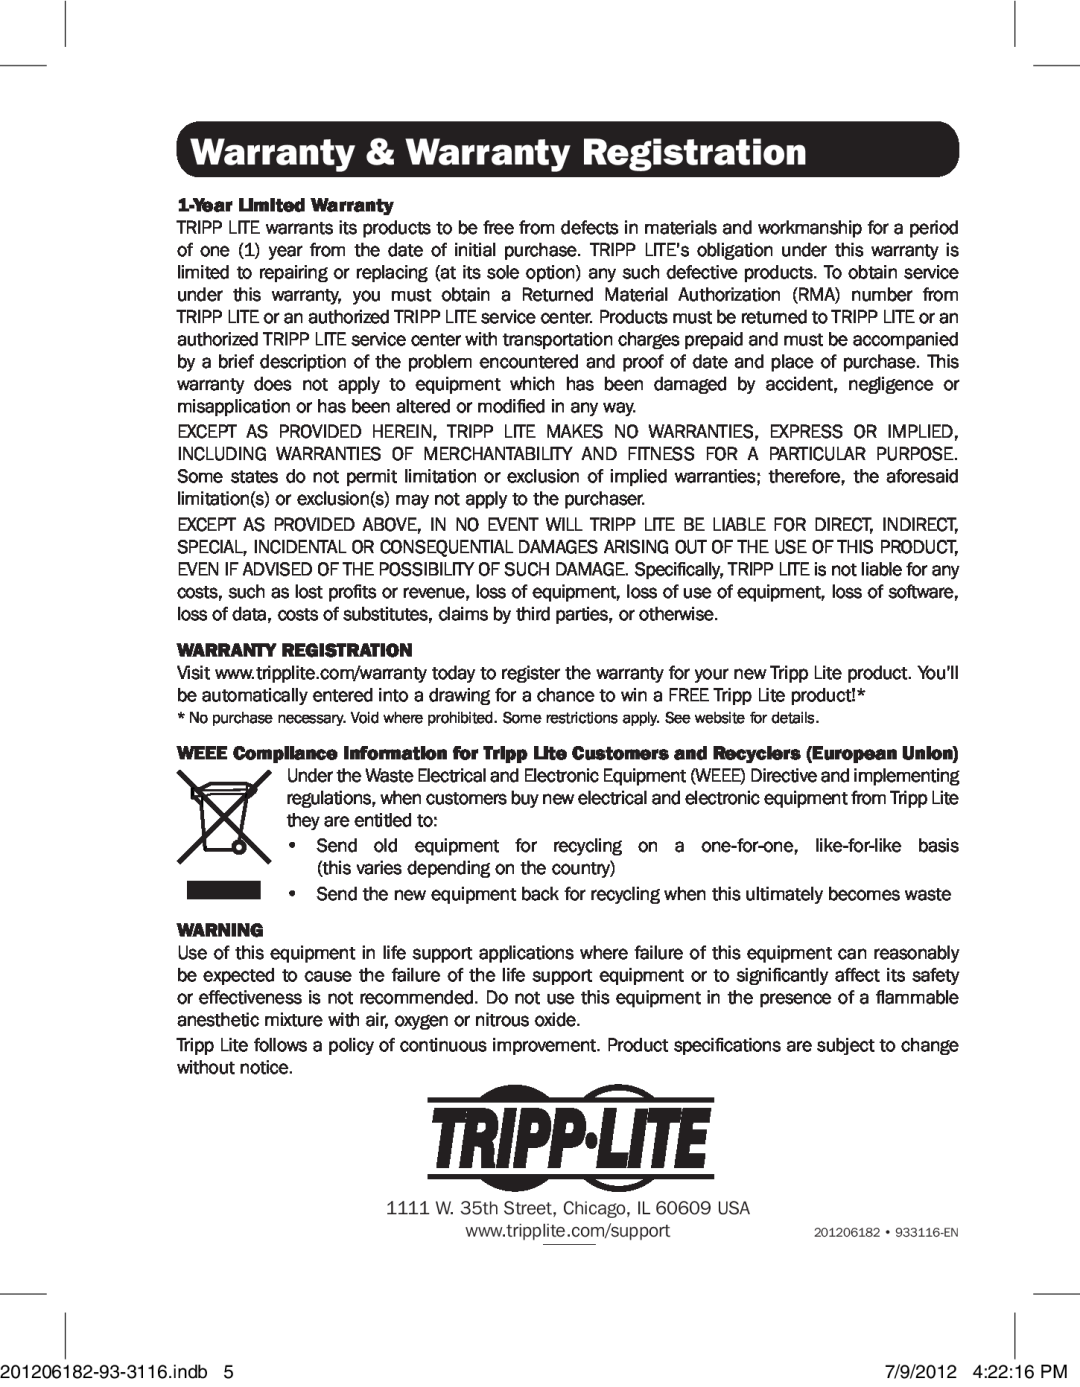 Tripp Lite B203-101 owner manual Warranty & Warranty Registration, Year Limited Warranty 